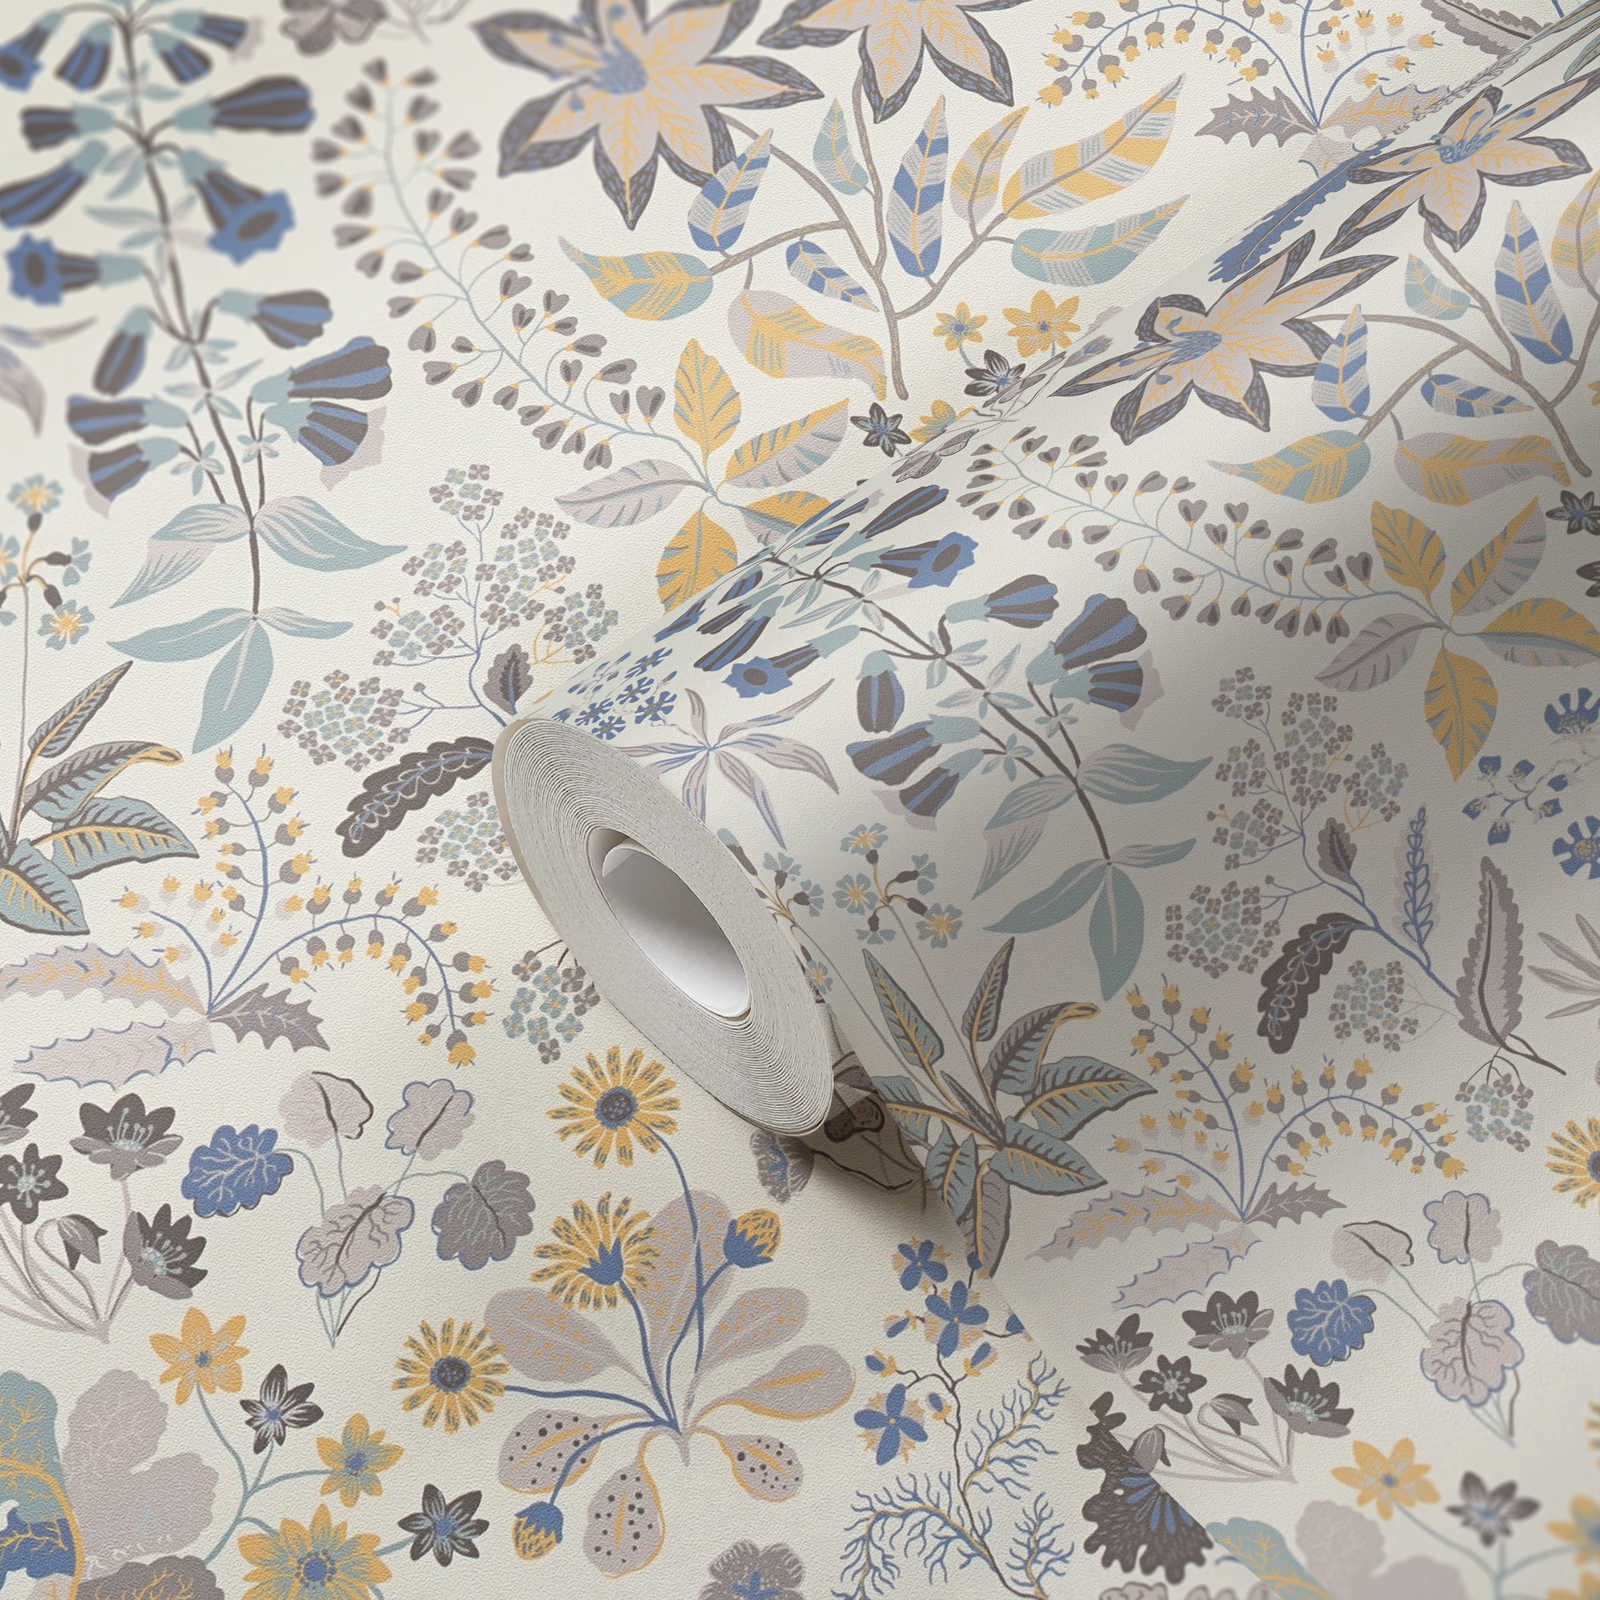             Vliesbehang met gedetailleerd bloemenpatroon - grijs, blauw, crème
        